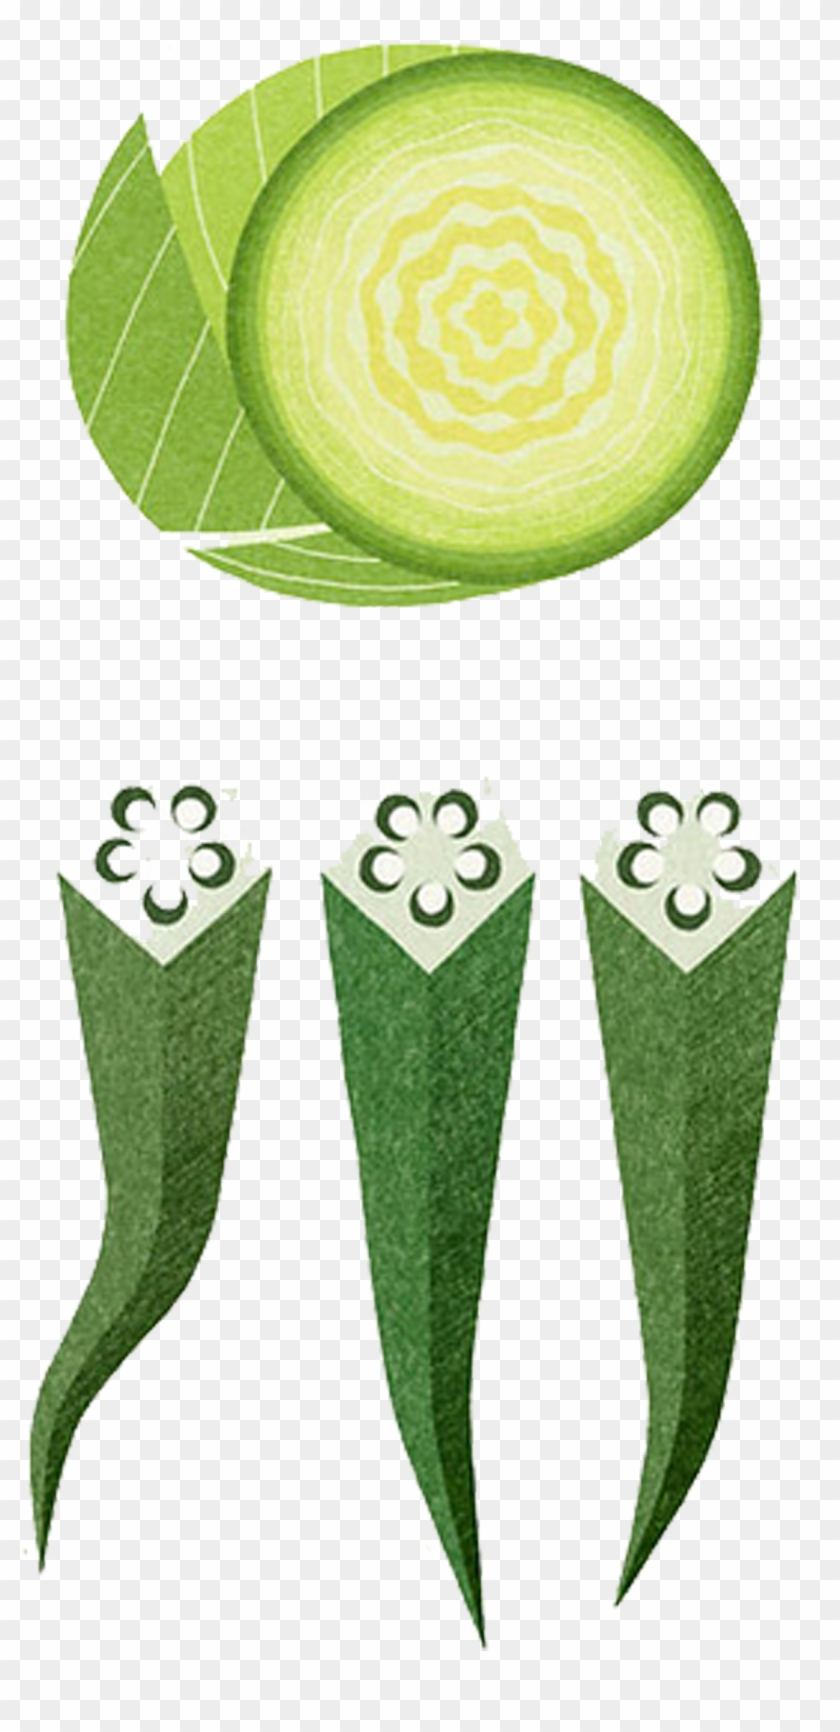 Okra Vegetable Painting Illustration - Illustration #934527